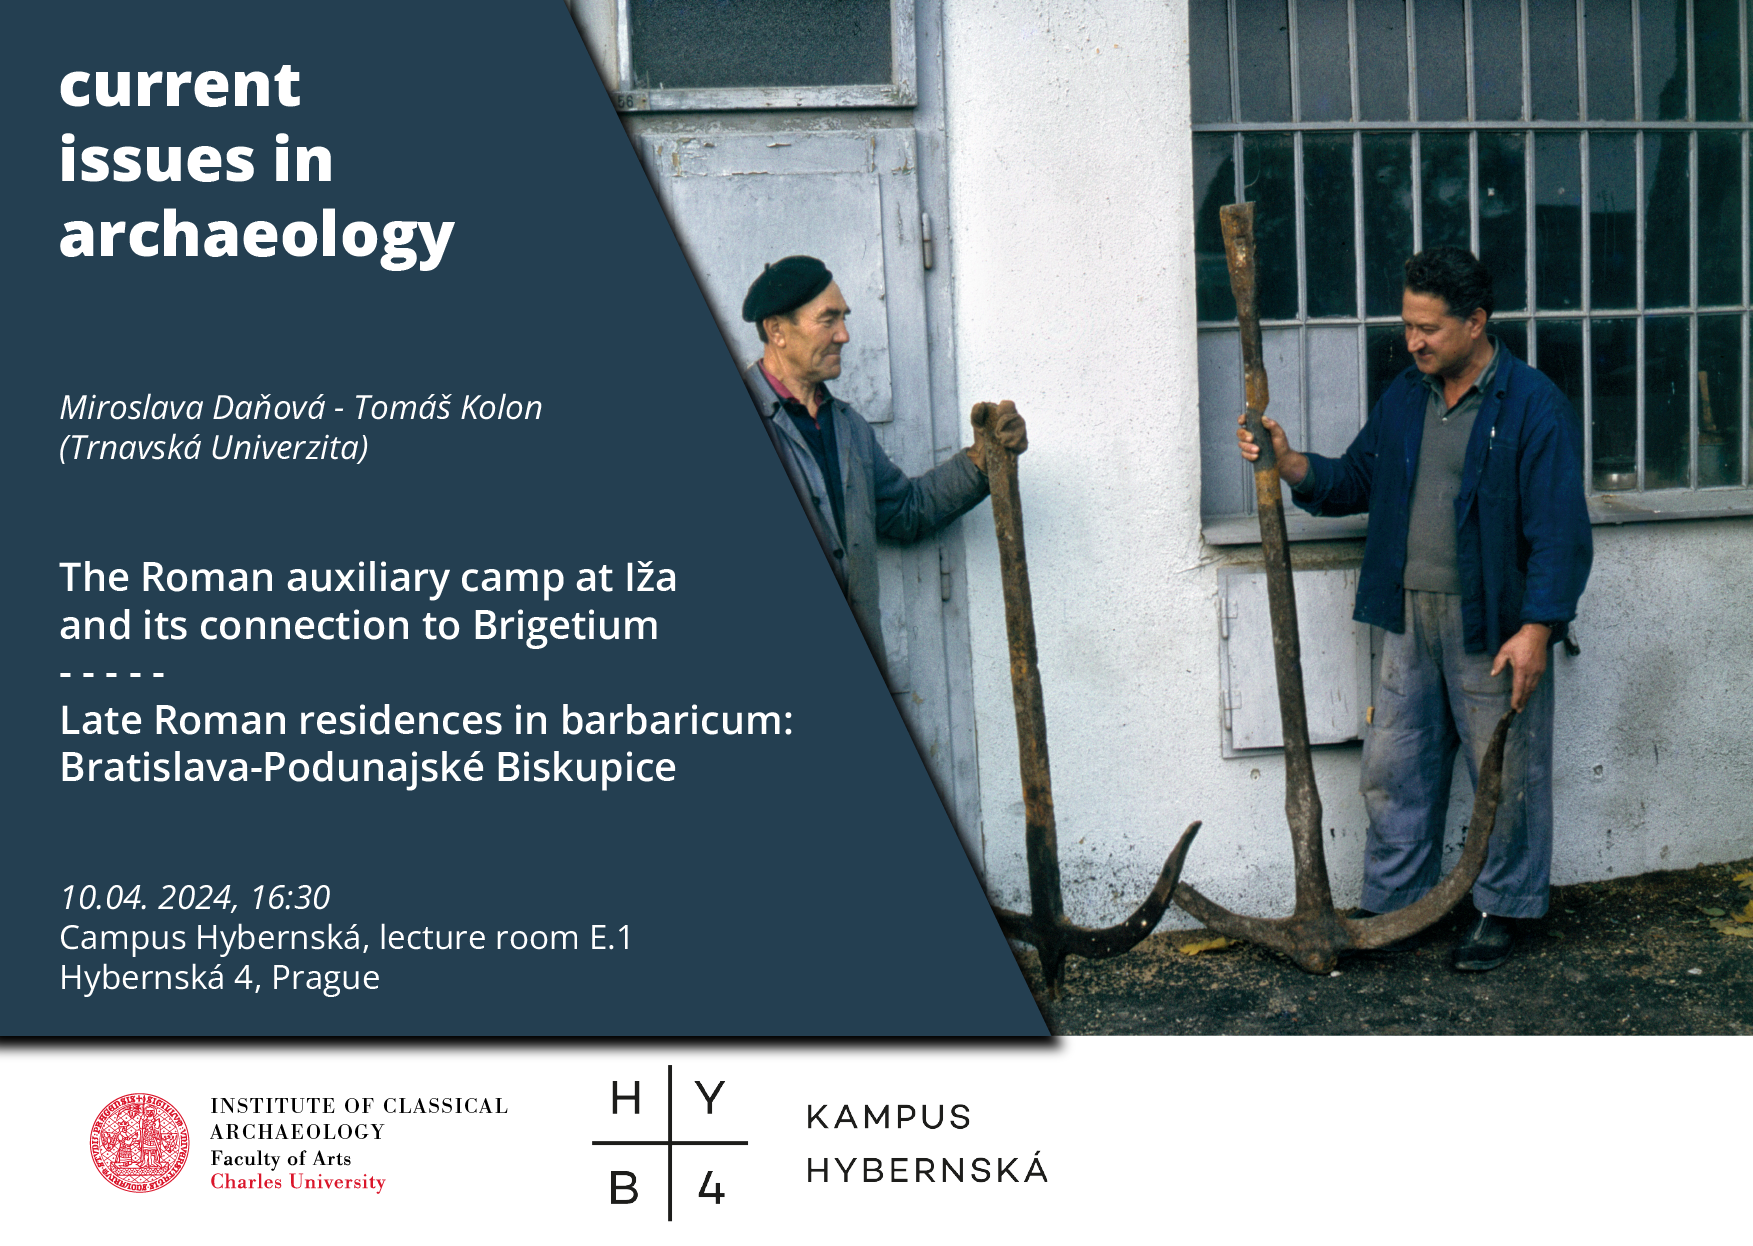 M. Daňová (Trnavská univerzita): "Rímsky vojenský tábor v Iži a jeho spojenie s Brigetiom" @ Kampus Hybernská, lecture room E.1